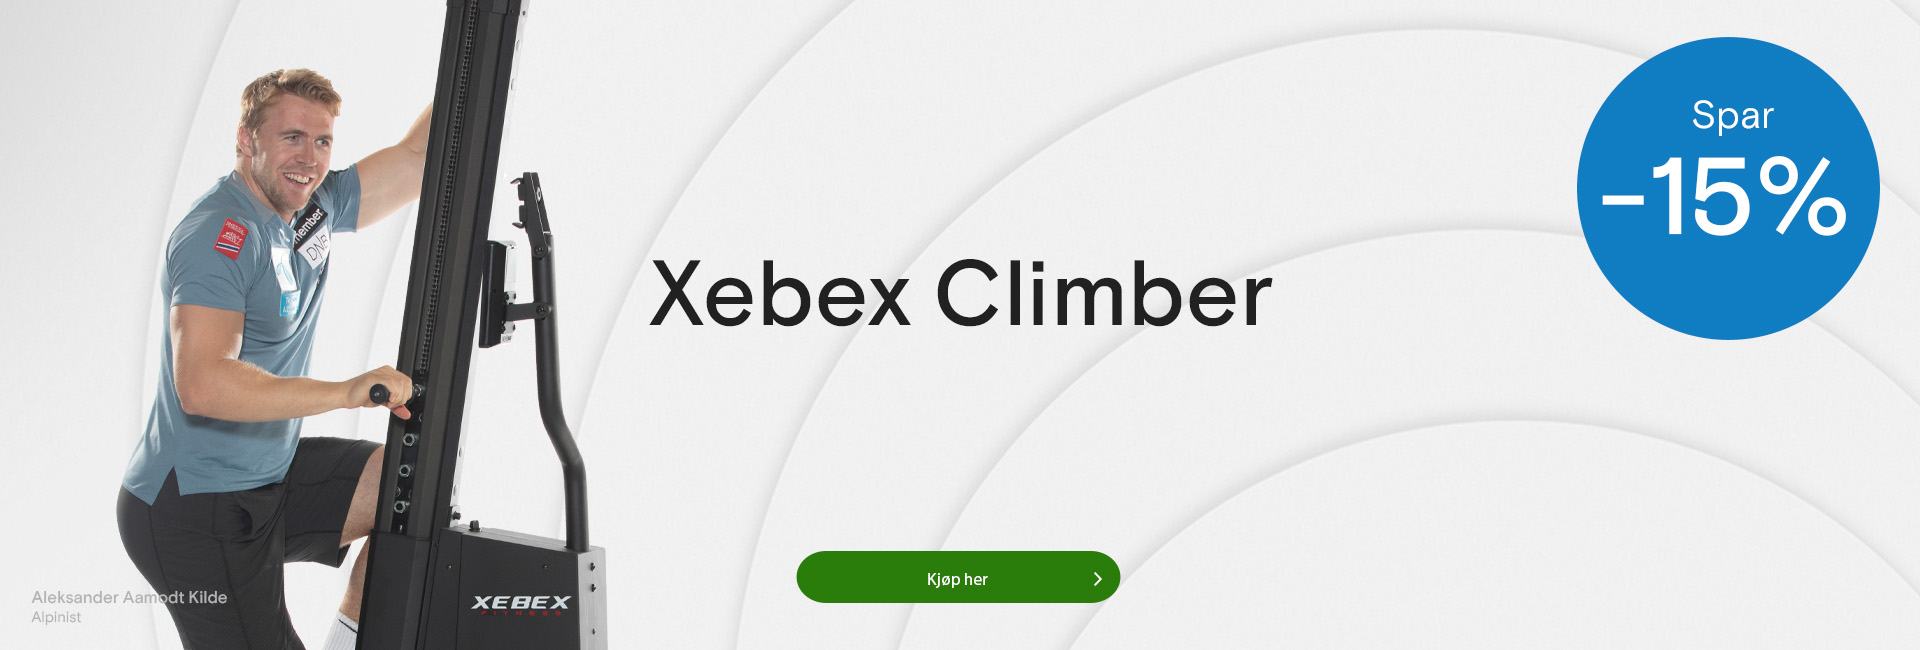 Tilbud på Xebex climber